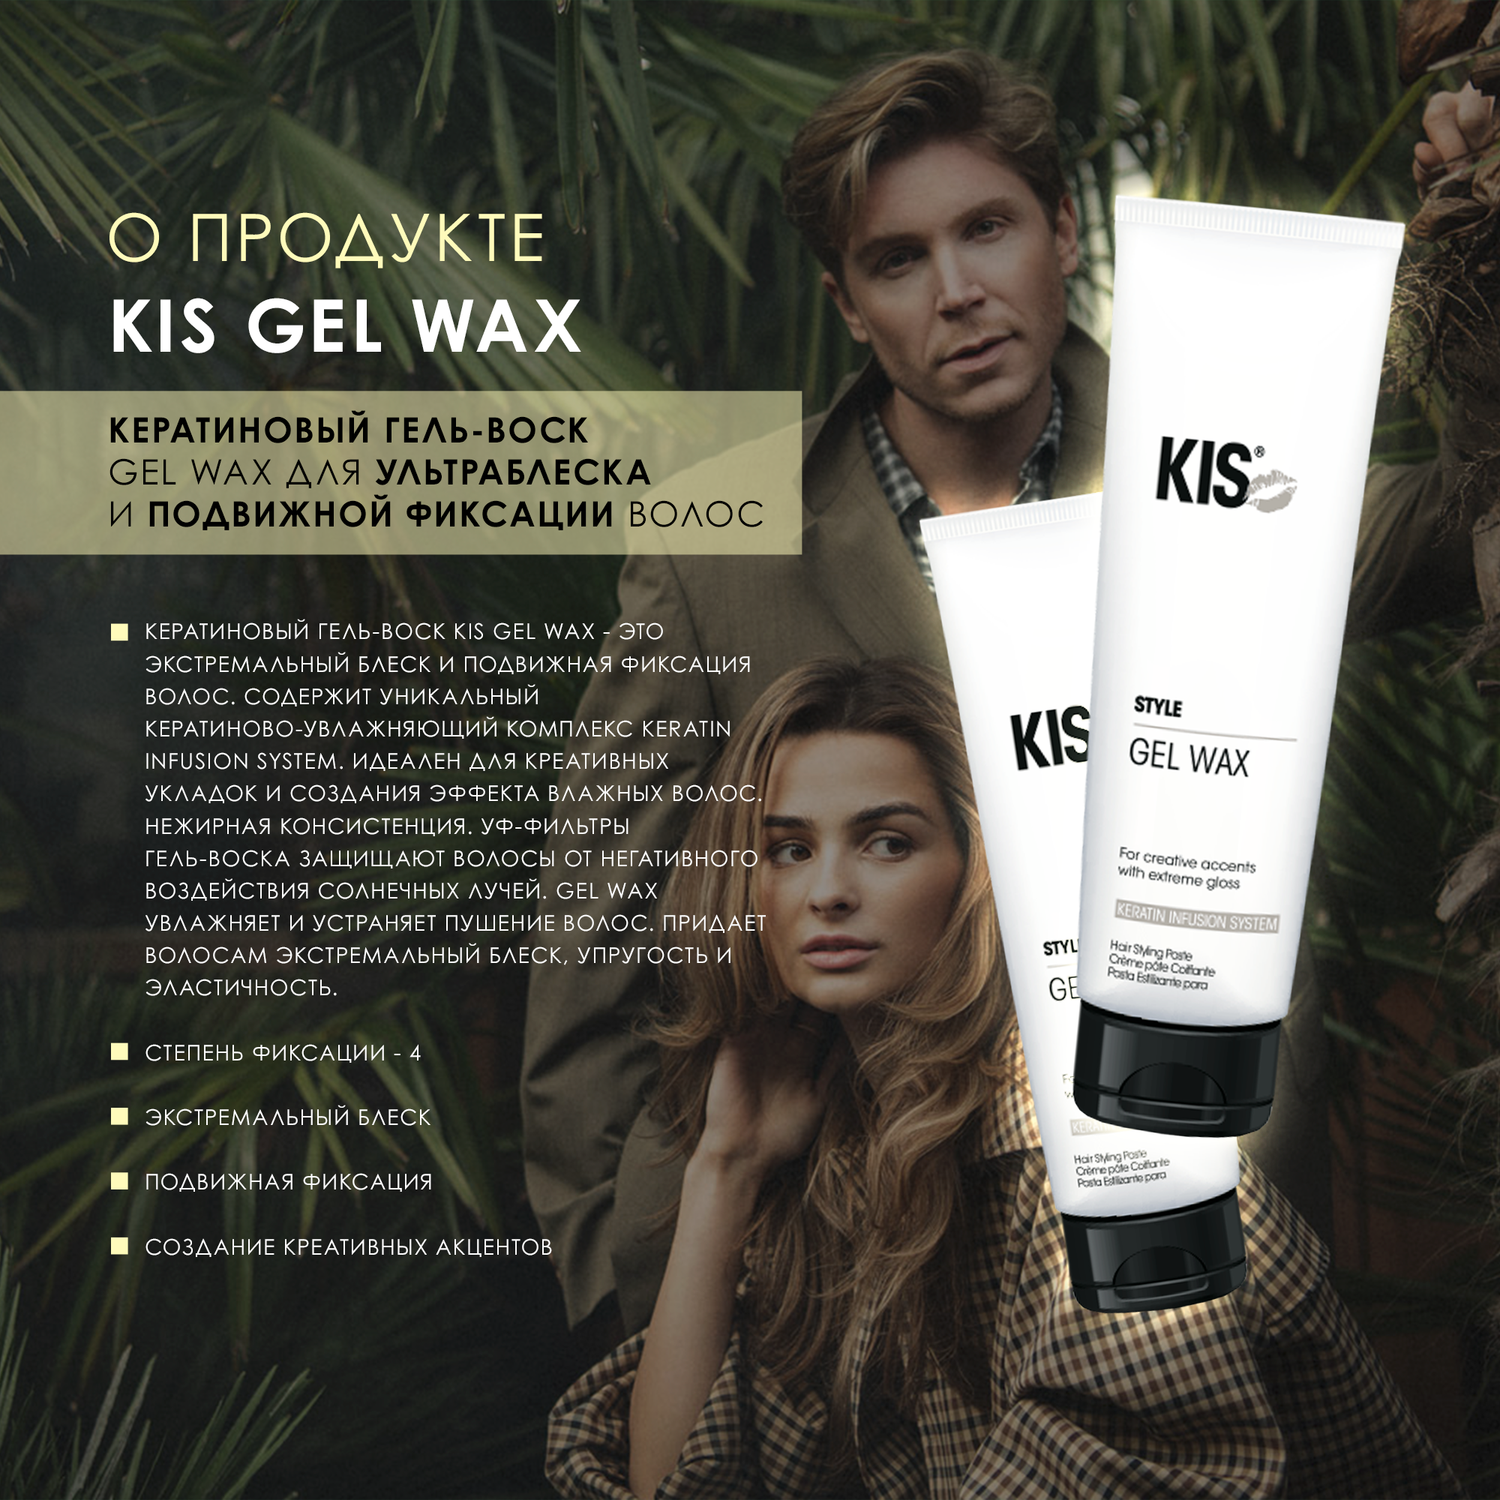 Гель для укладки KIS Kis gel wax – гель-воск для подвижной укладки локонов в стиле «beach waves» - фото 2